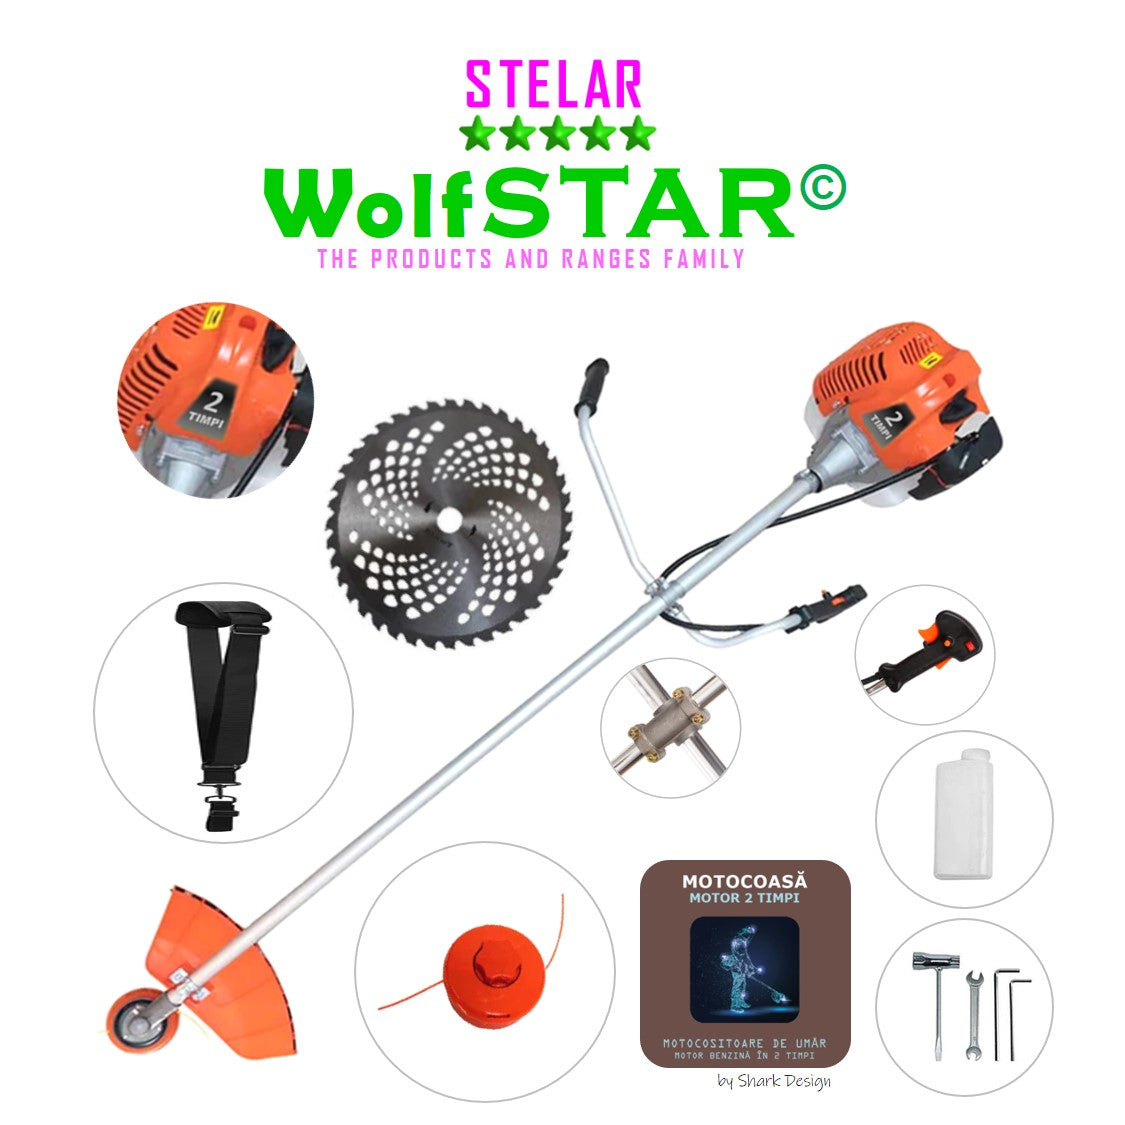 Motocoasa WolfStar Stelar cu motor pe benzina in 2 timpi, 6 CP, 52 cc, Portocalie, sistem taiere cu tambur plus accesorii, plus sistem taiere cu disc vidia de 255mm